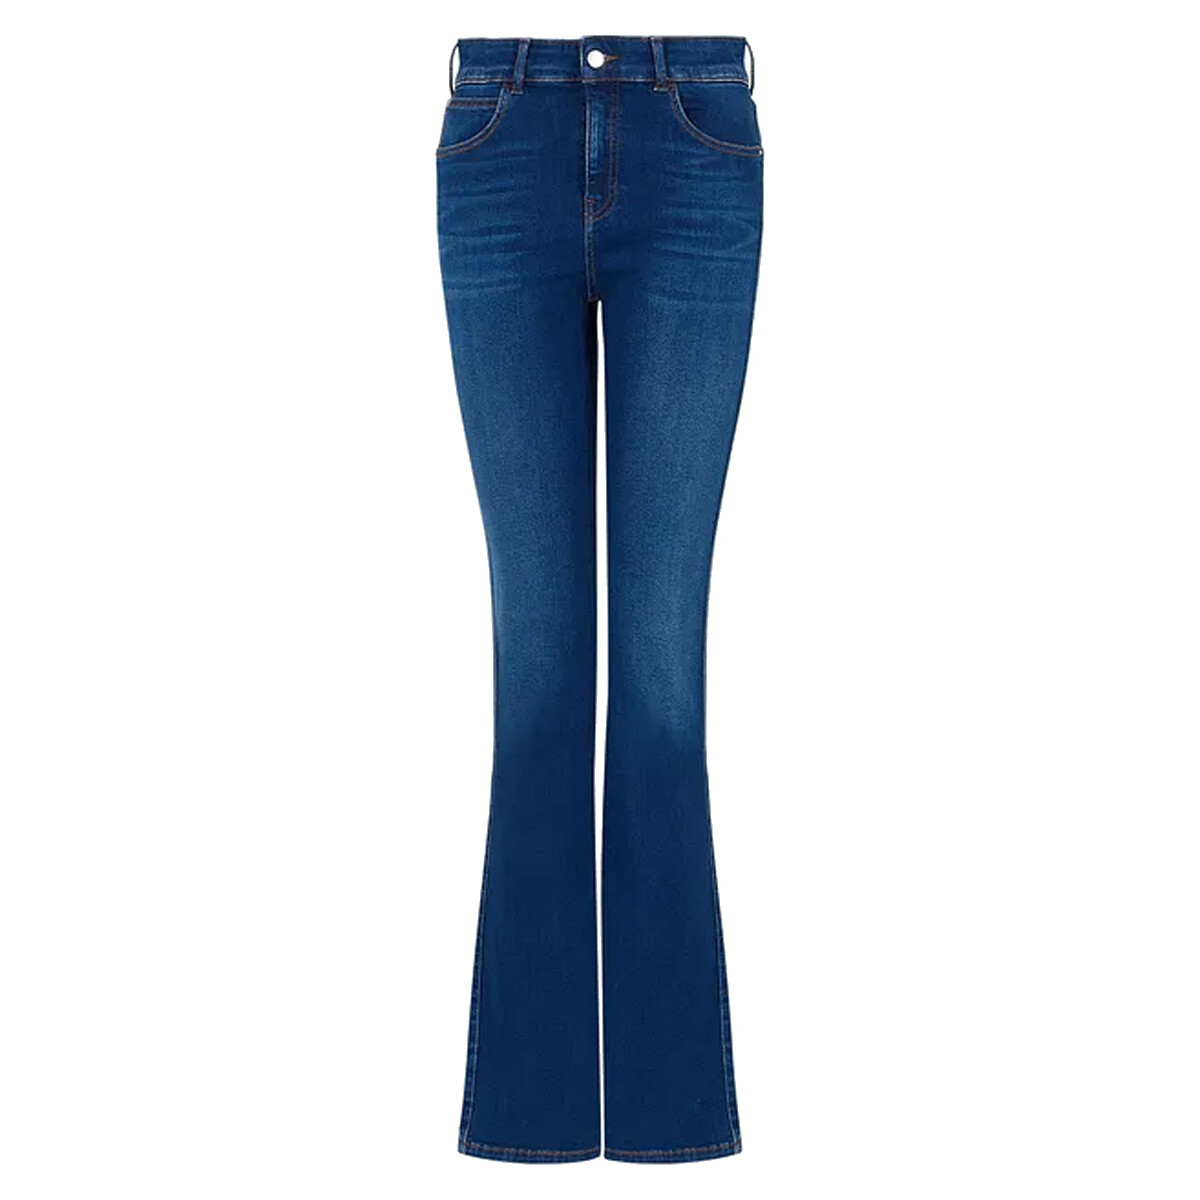 Abbigliamento Donna Jeans Emporio Armani 6r2j47_2daxz-0942 Blu